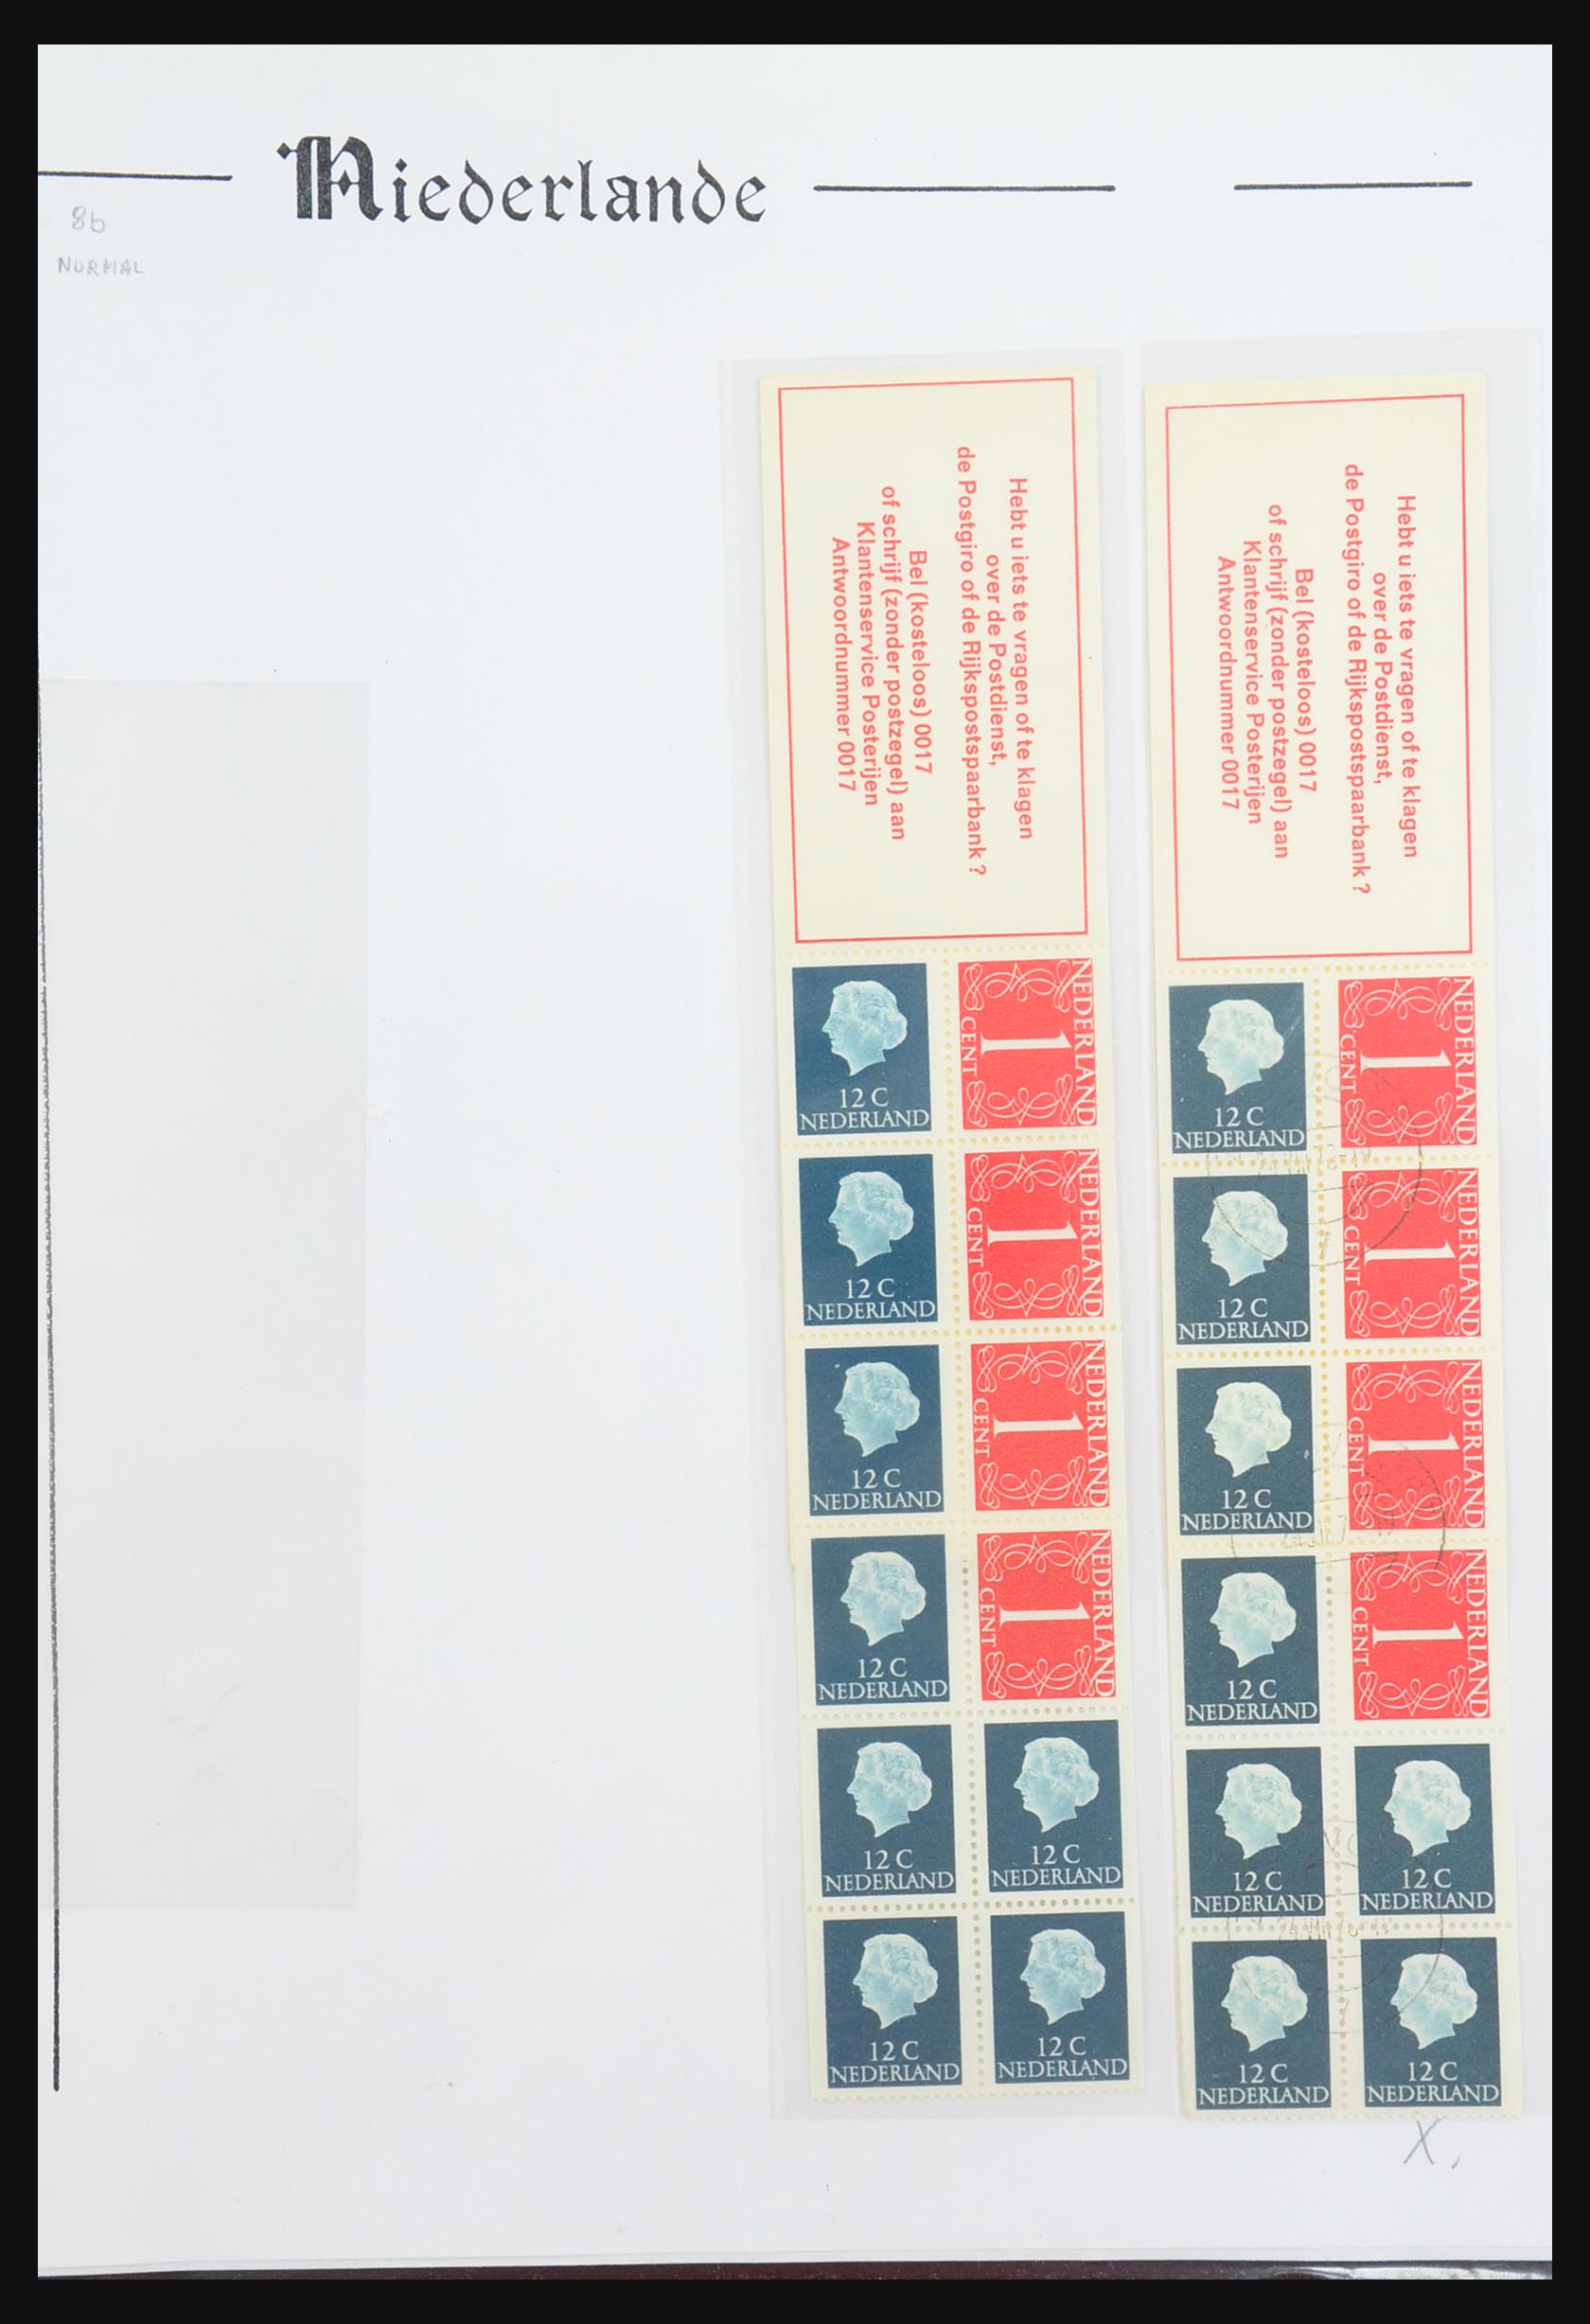 31311 029 - 31311 Netherlands stamp booklets 1964-1994.